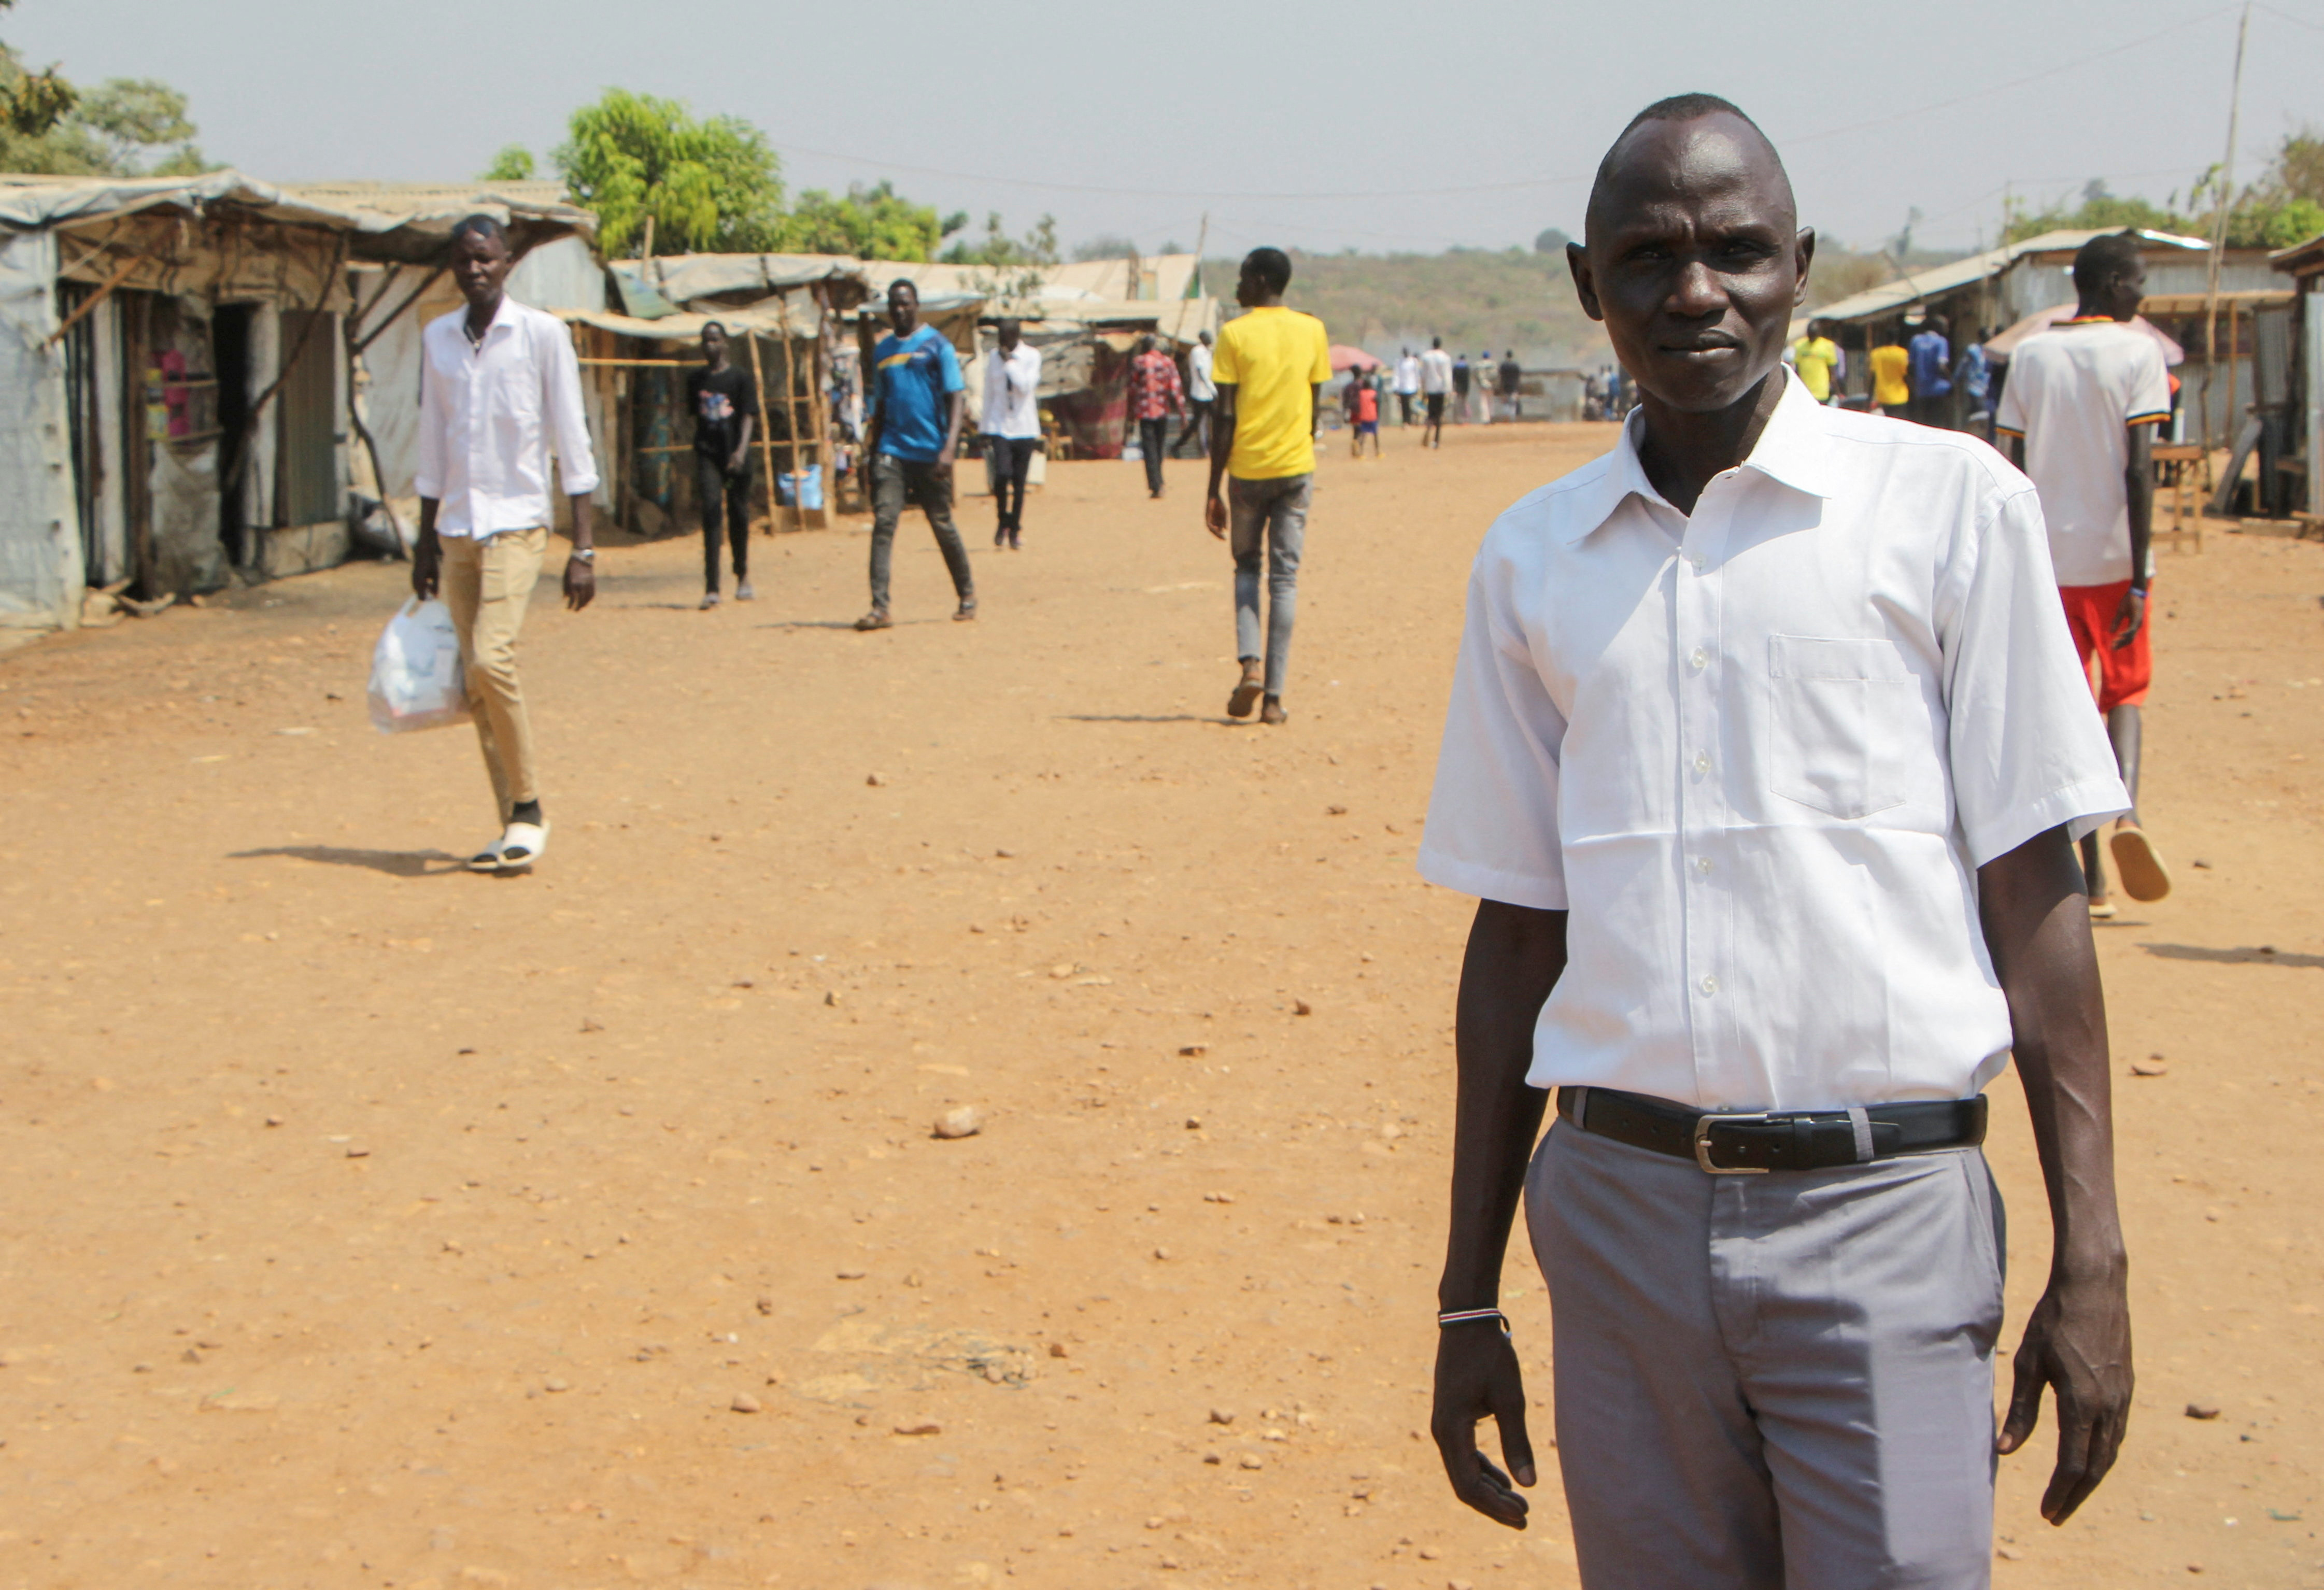 South Sudan's displaced by war seek hope in Pope's visit in Juba